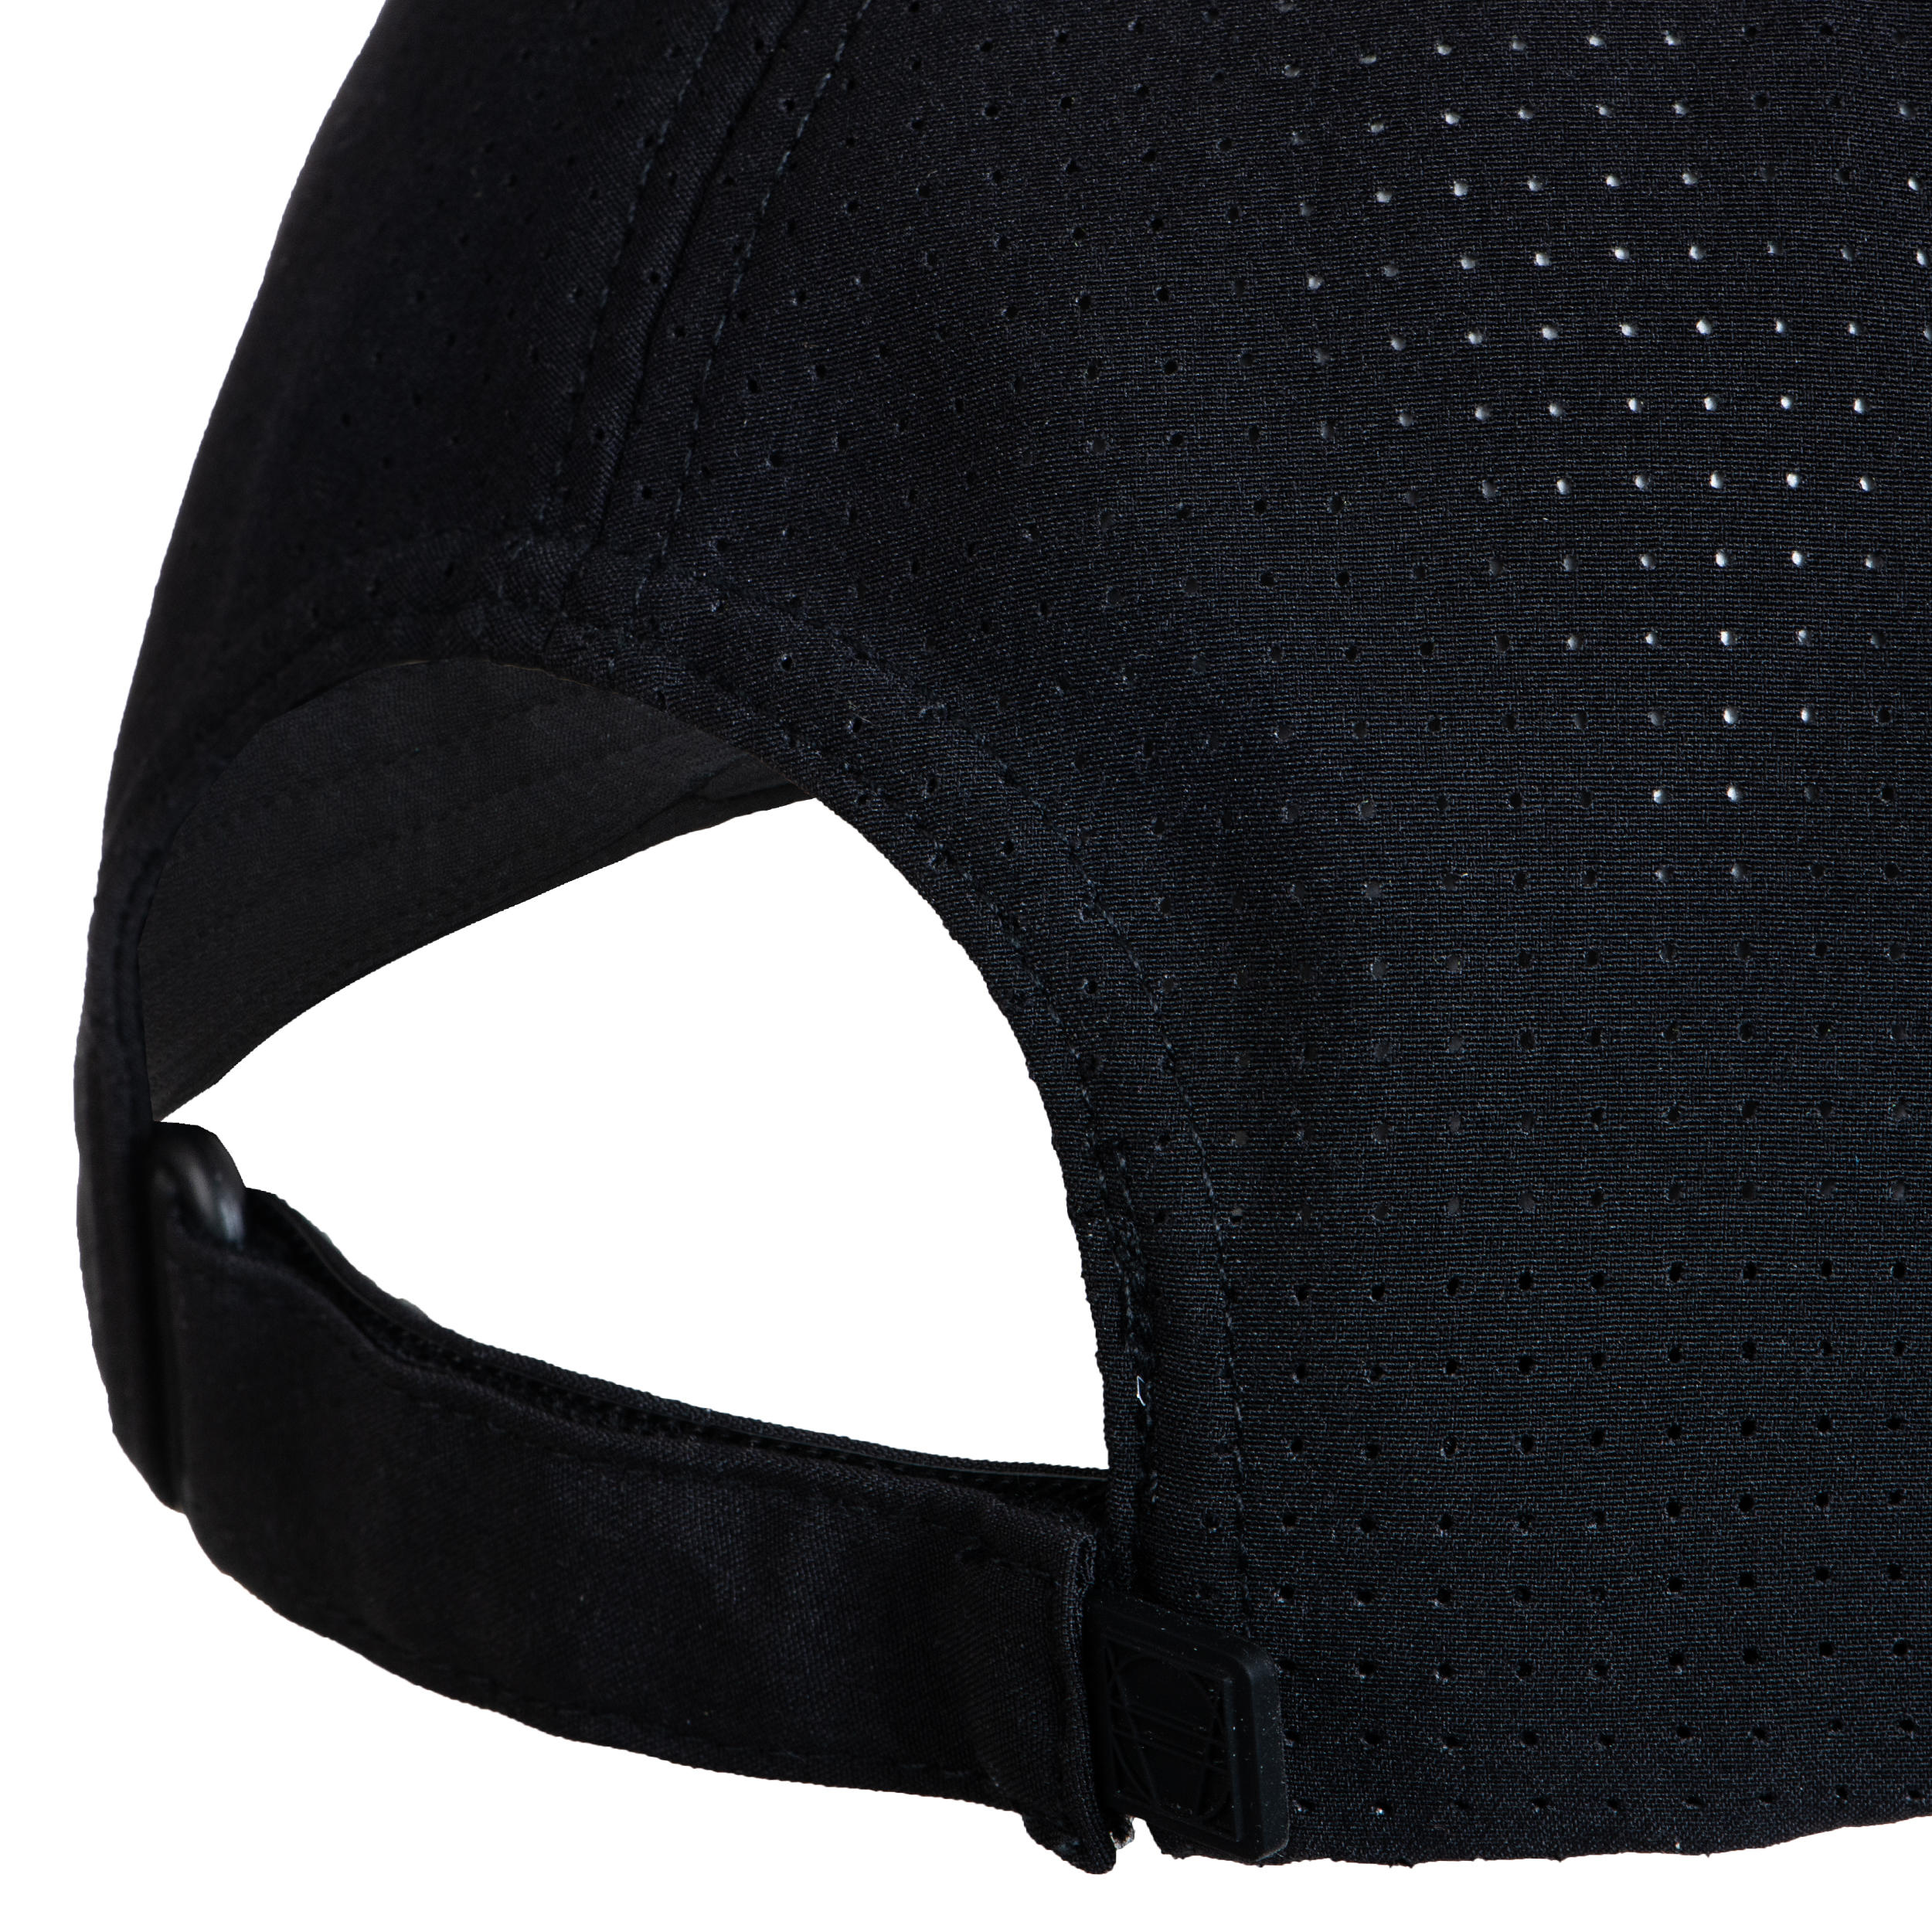 網球帽TC 900 T58－黑灰配色- DECATHLON